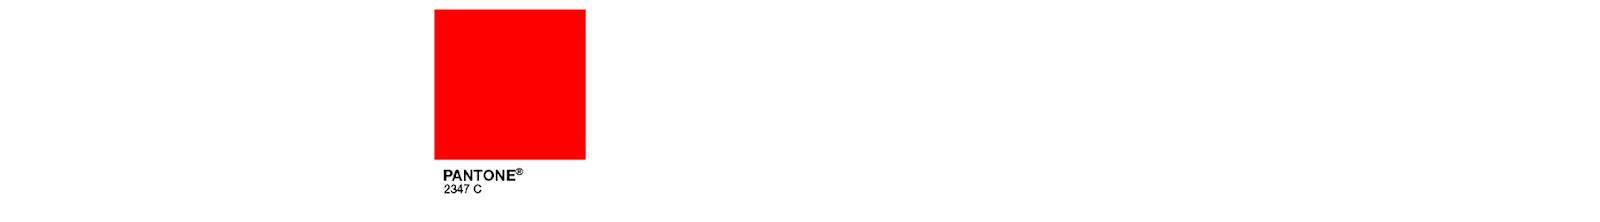 PANTONE 2347 C